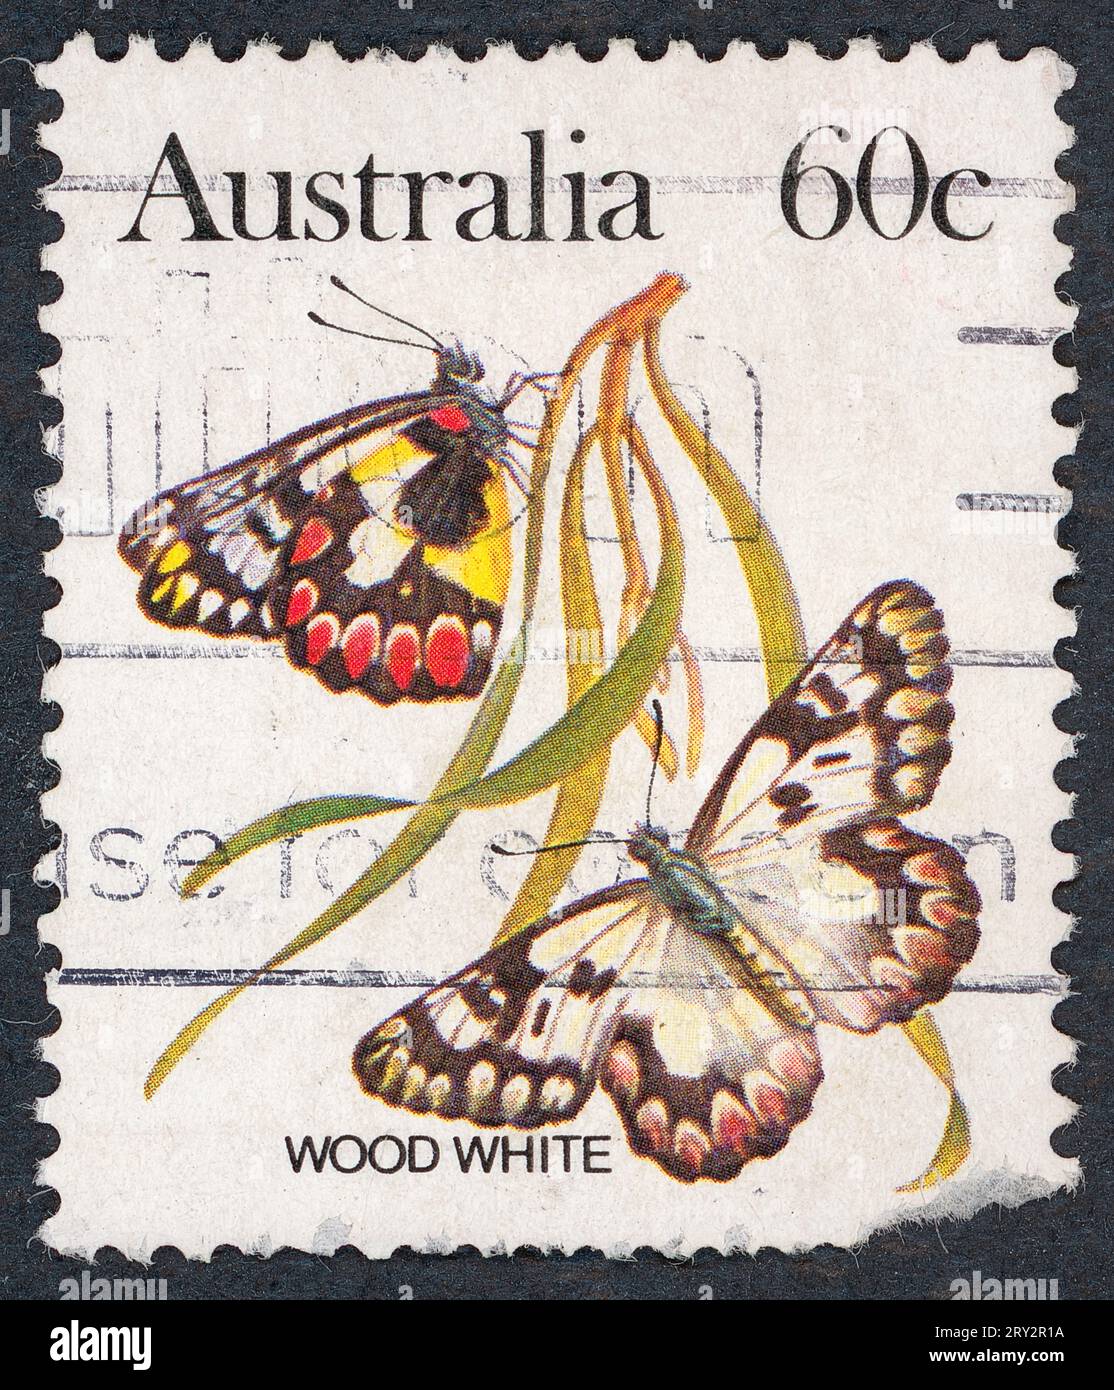 Weißer Holzfalter (Leptidea sinapis). Australische Schmetterlingsserie. Briefmarke, ausgestellt 1983 in Australien. Stockfoto